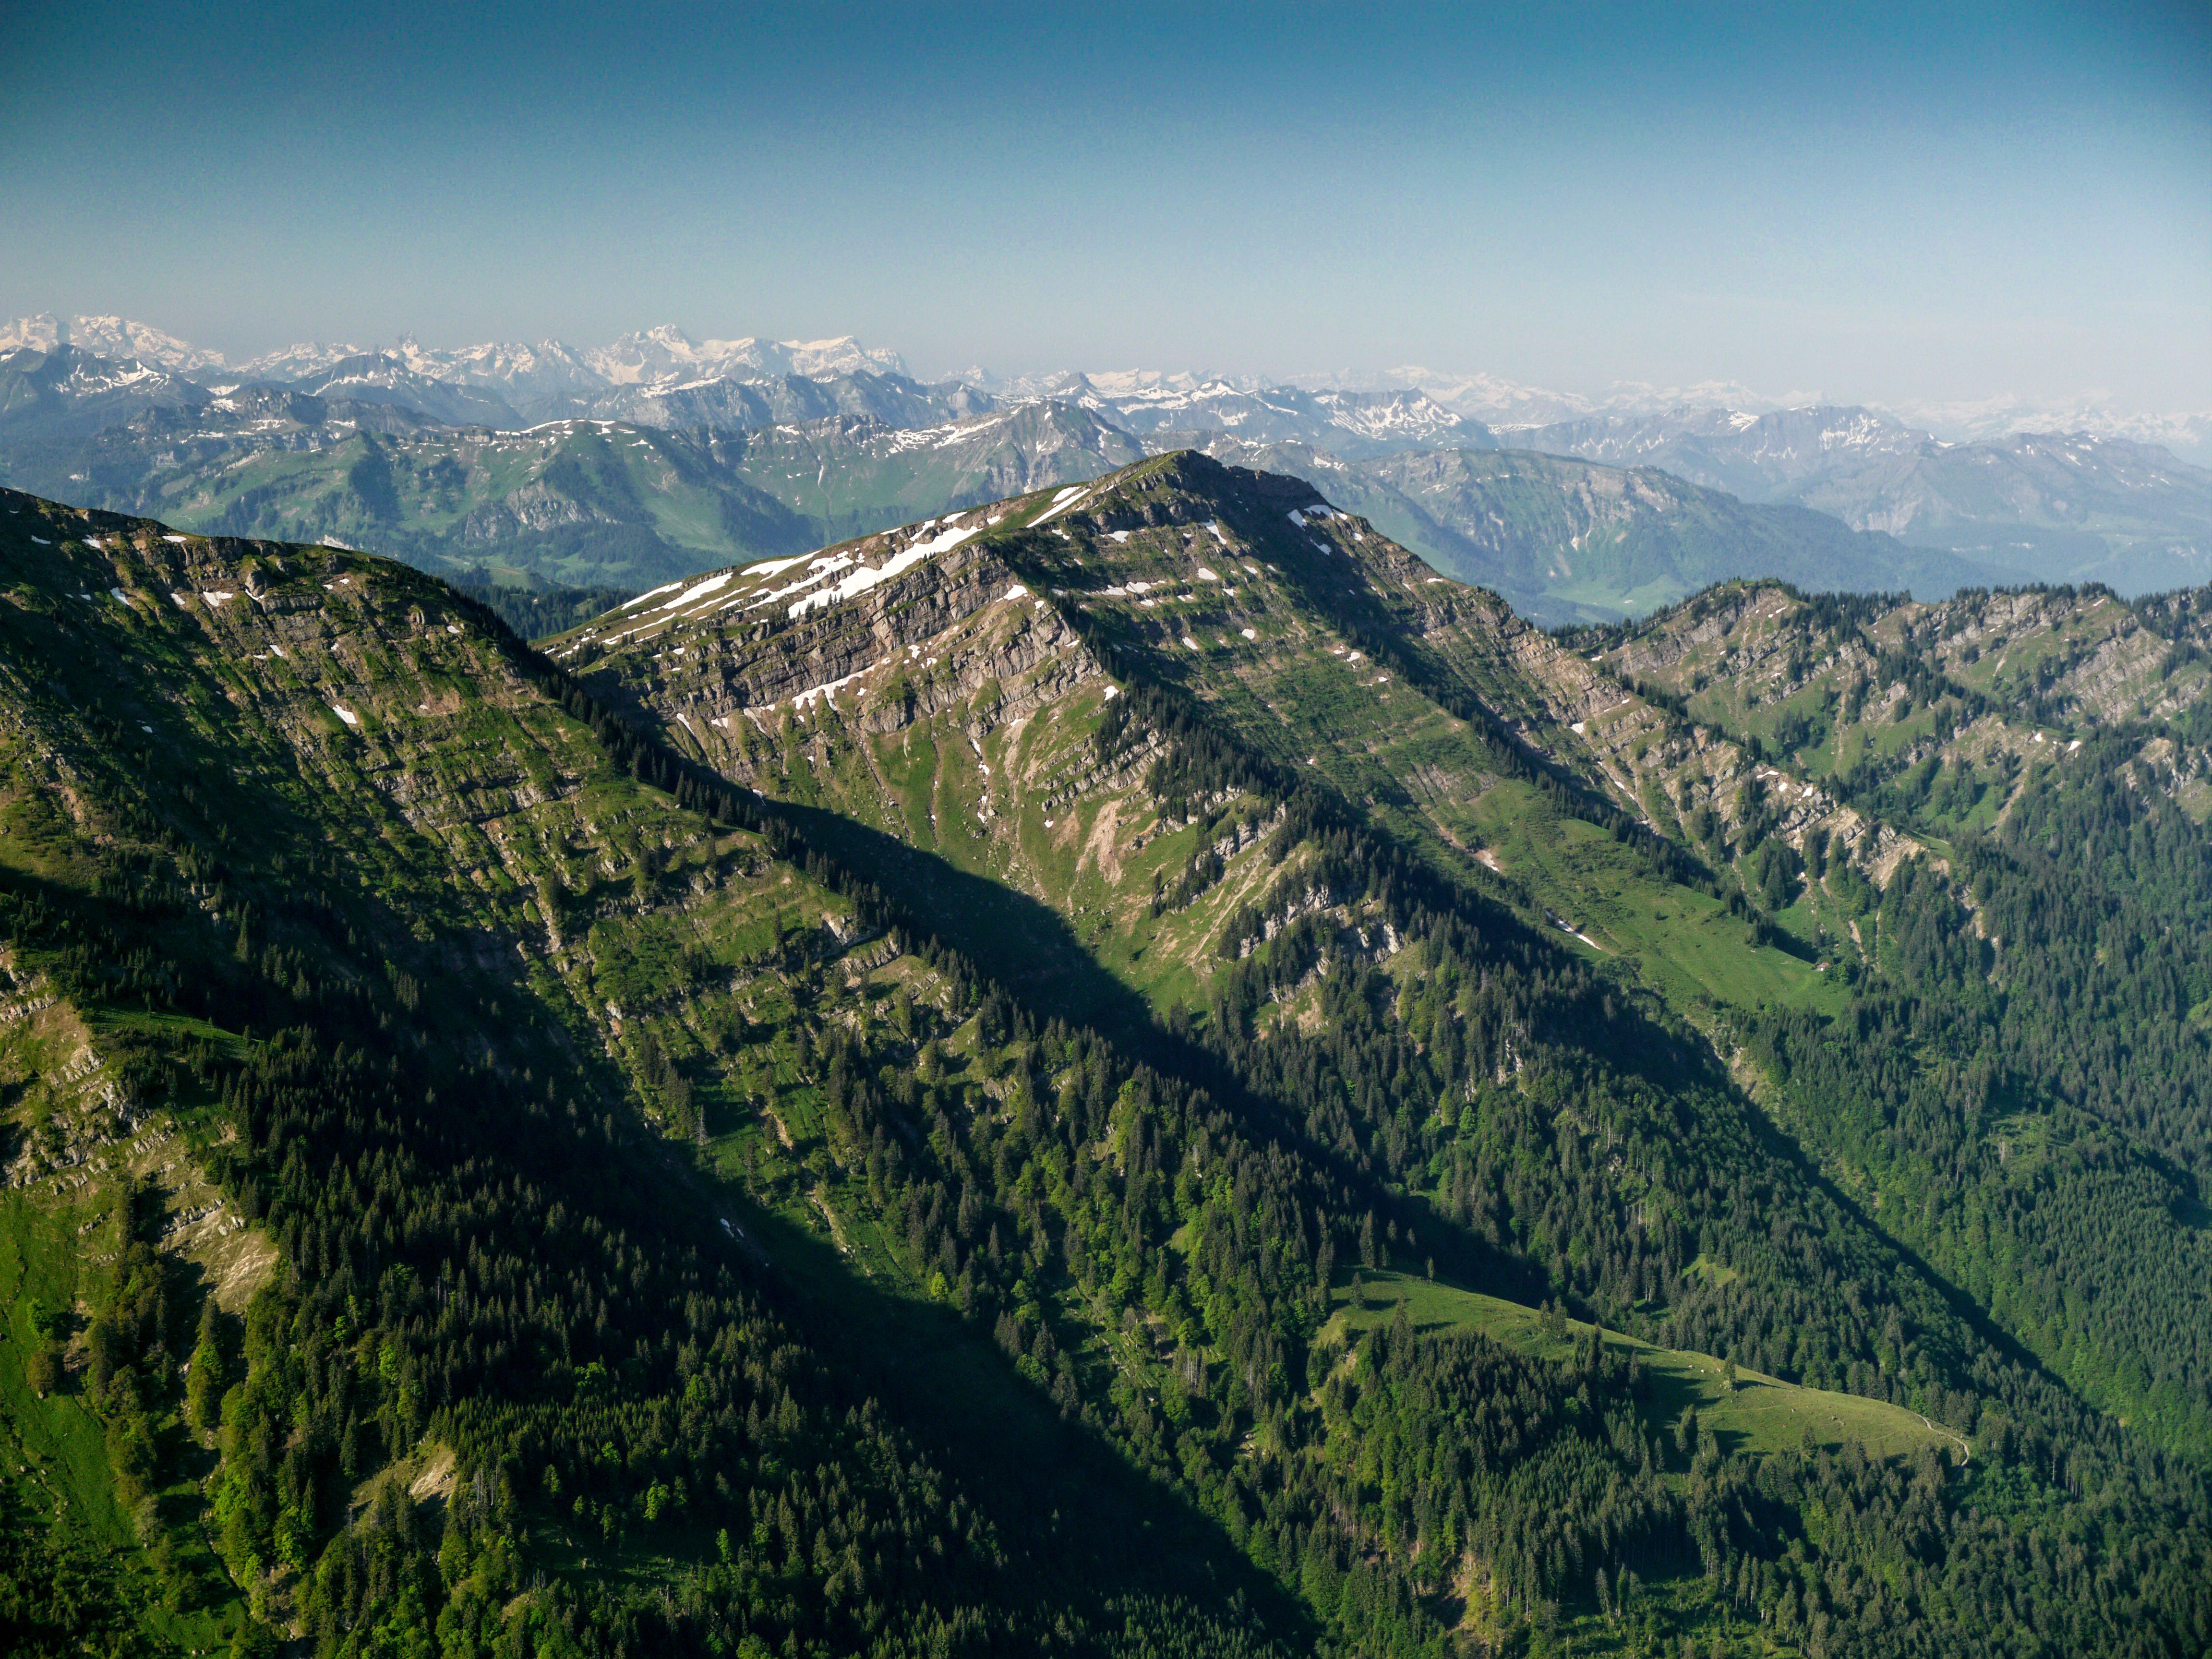 Der Hochgrat ist ein 1834 Meter hoher Berg in den Allgäuer Alpen. Er hat als höchste Erhebung der Nagelfluhkette und des gesamten Allgäuer Voralpenlandes eine herausragende touristische und geographische Bedeutung. Von dort aus hat man eine wunderbare Aussicht auf die Region Alpsee-Grünten.